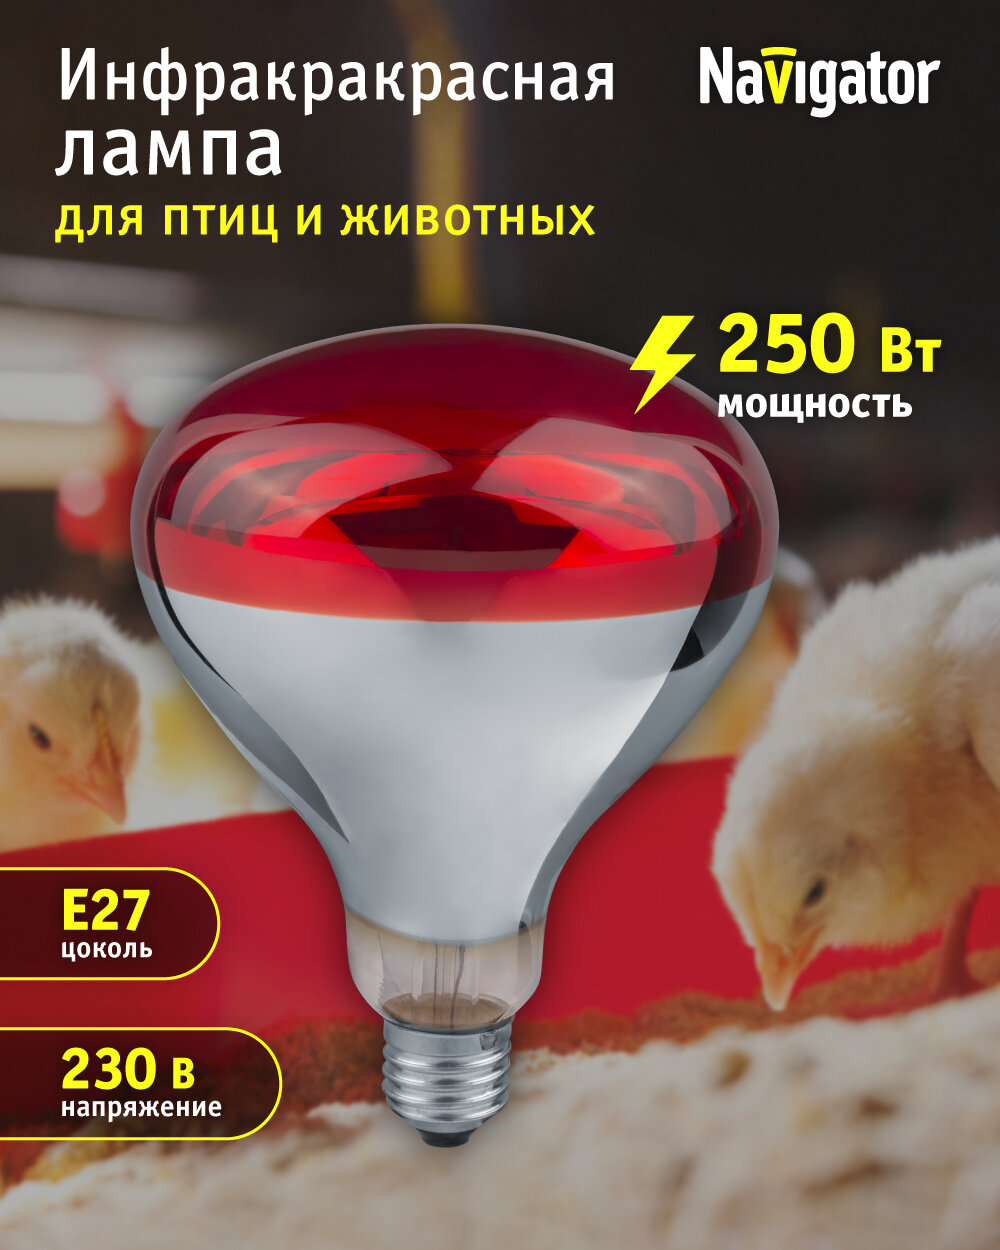 Инфракрасная лампа для обогрева птиц и животных NAVIGATOR 93 972, рефлектор R125, 250 Вт, Е27